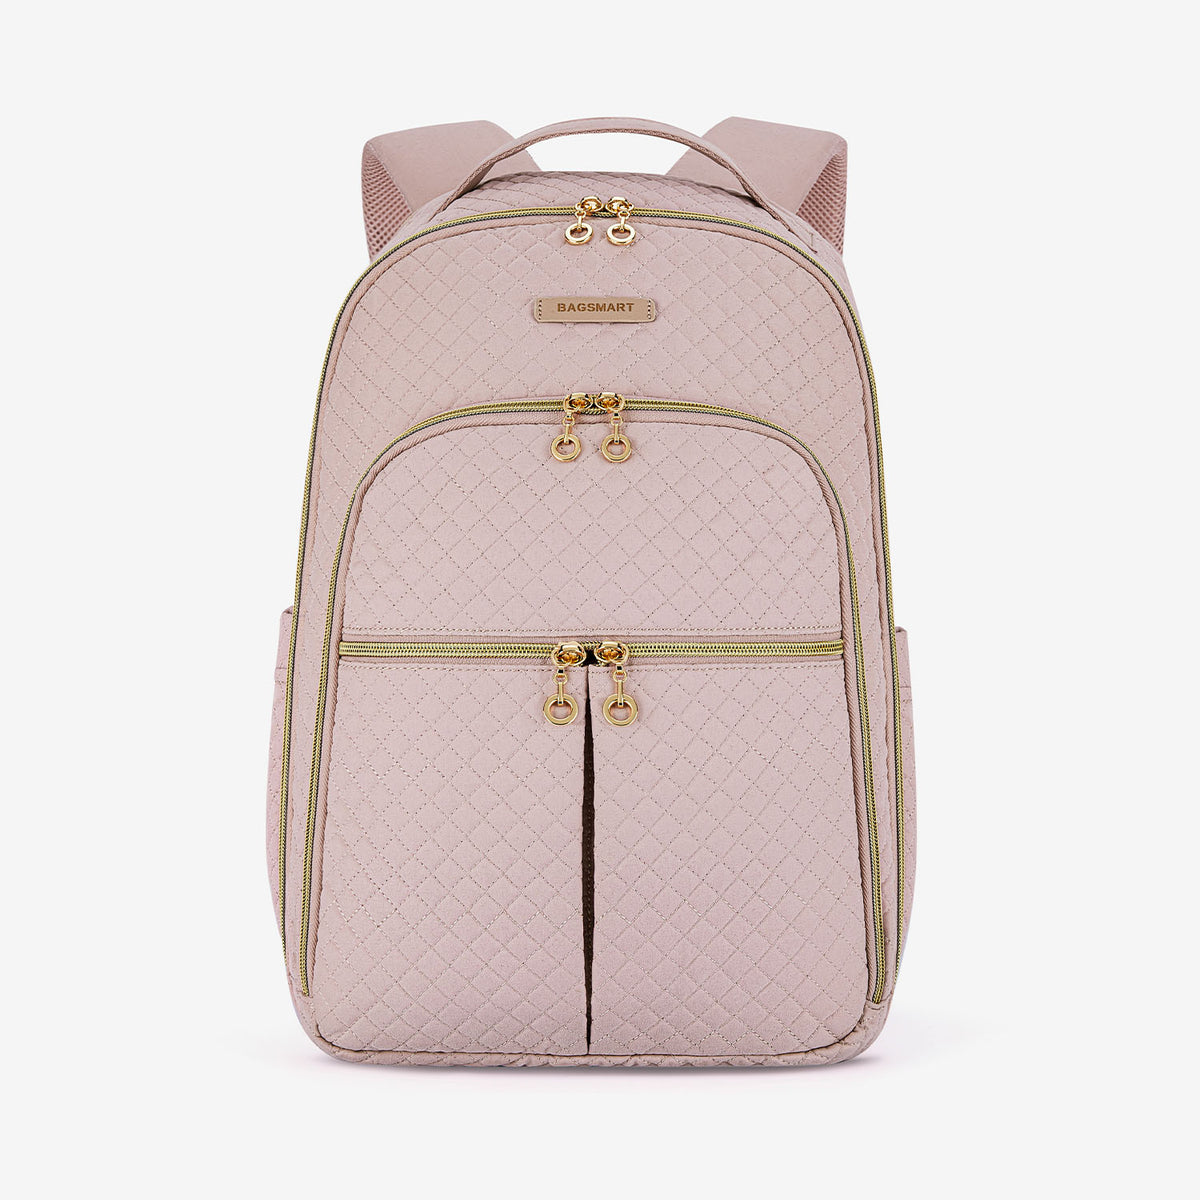 Kate Spade Pink Backpacks